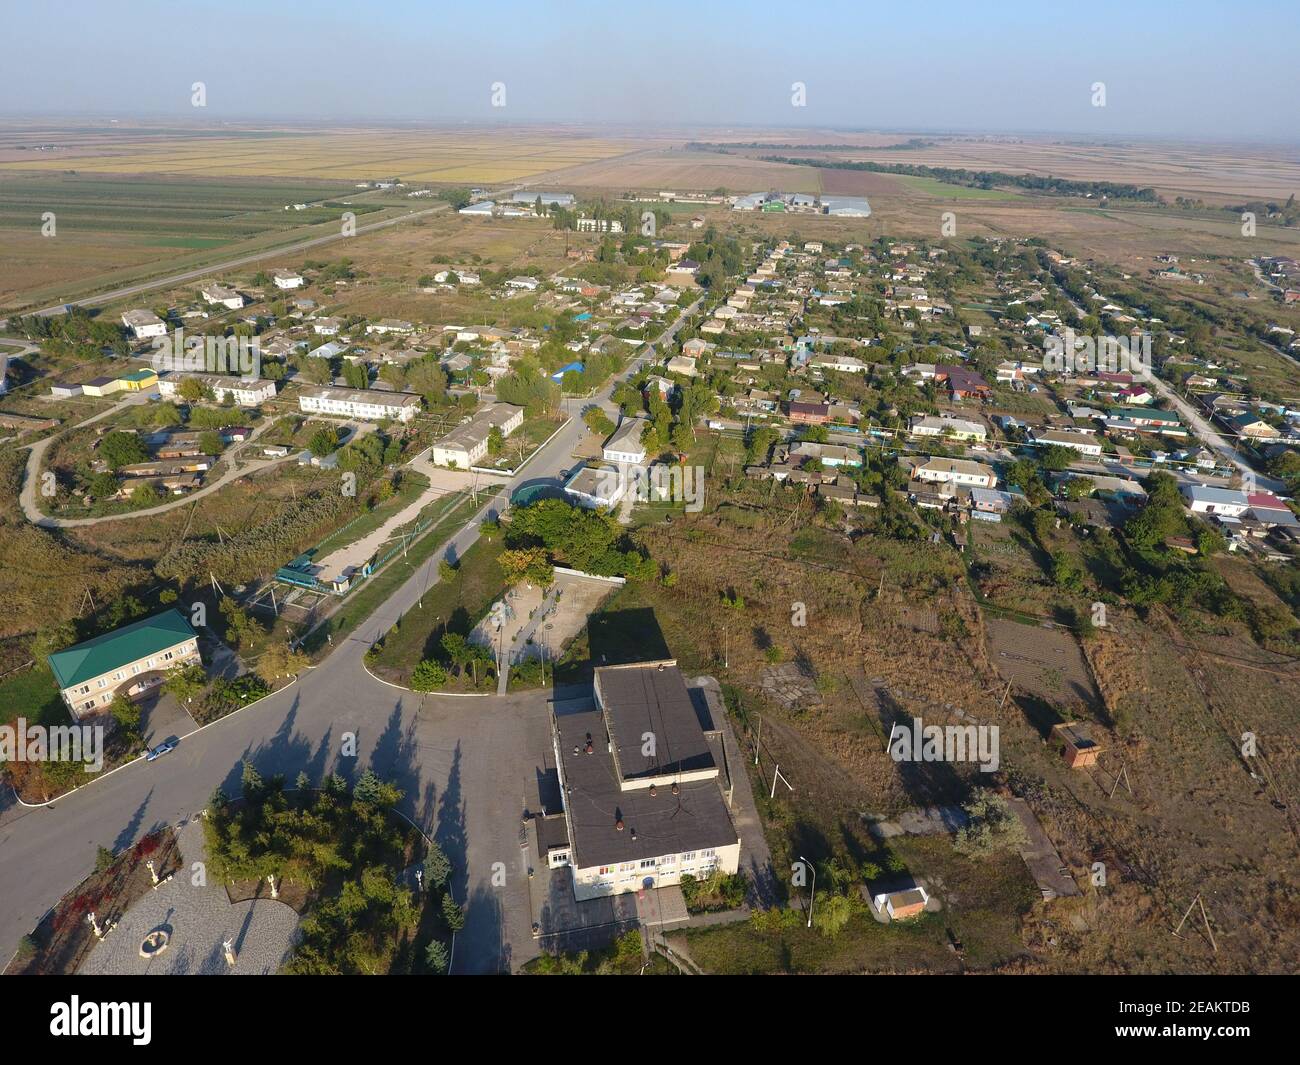 Vue depuis le sommet du village. Maisons et jardins. Campagne, paysage rustique. Photographie aérienne Banque D'Images